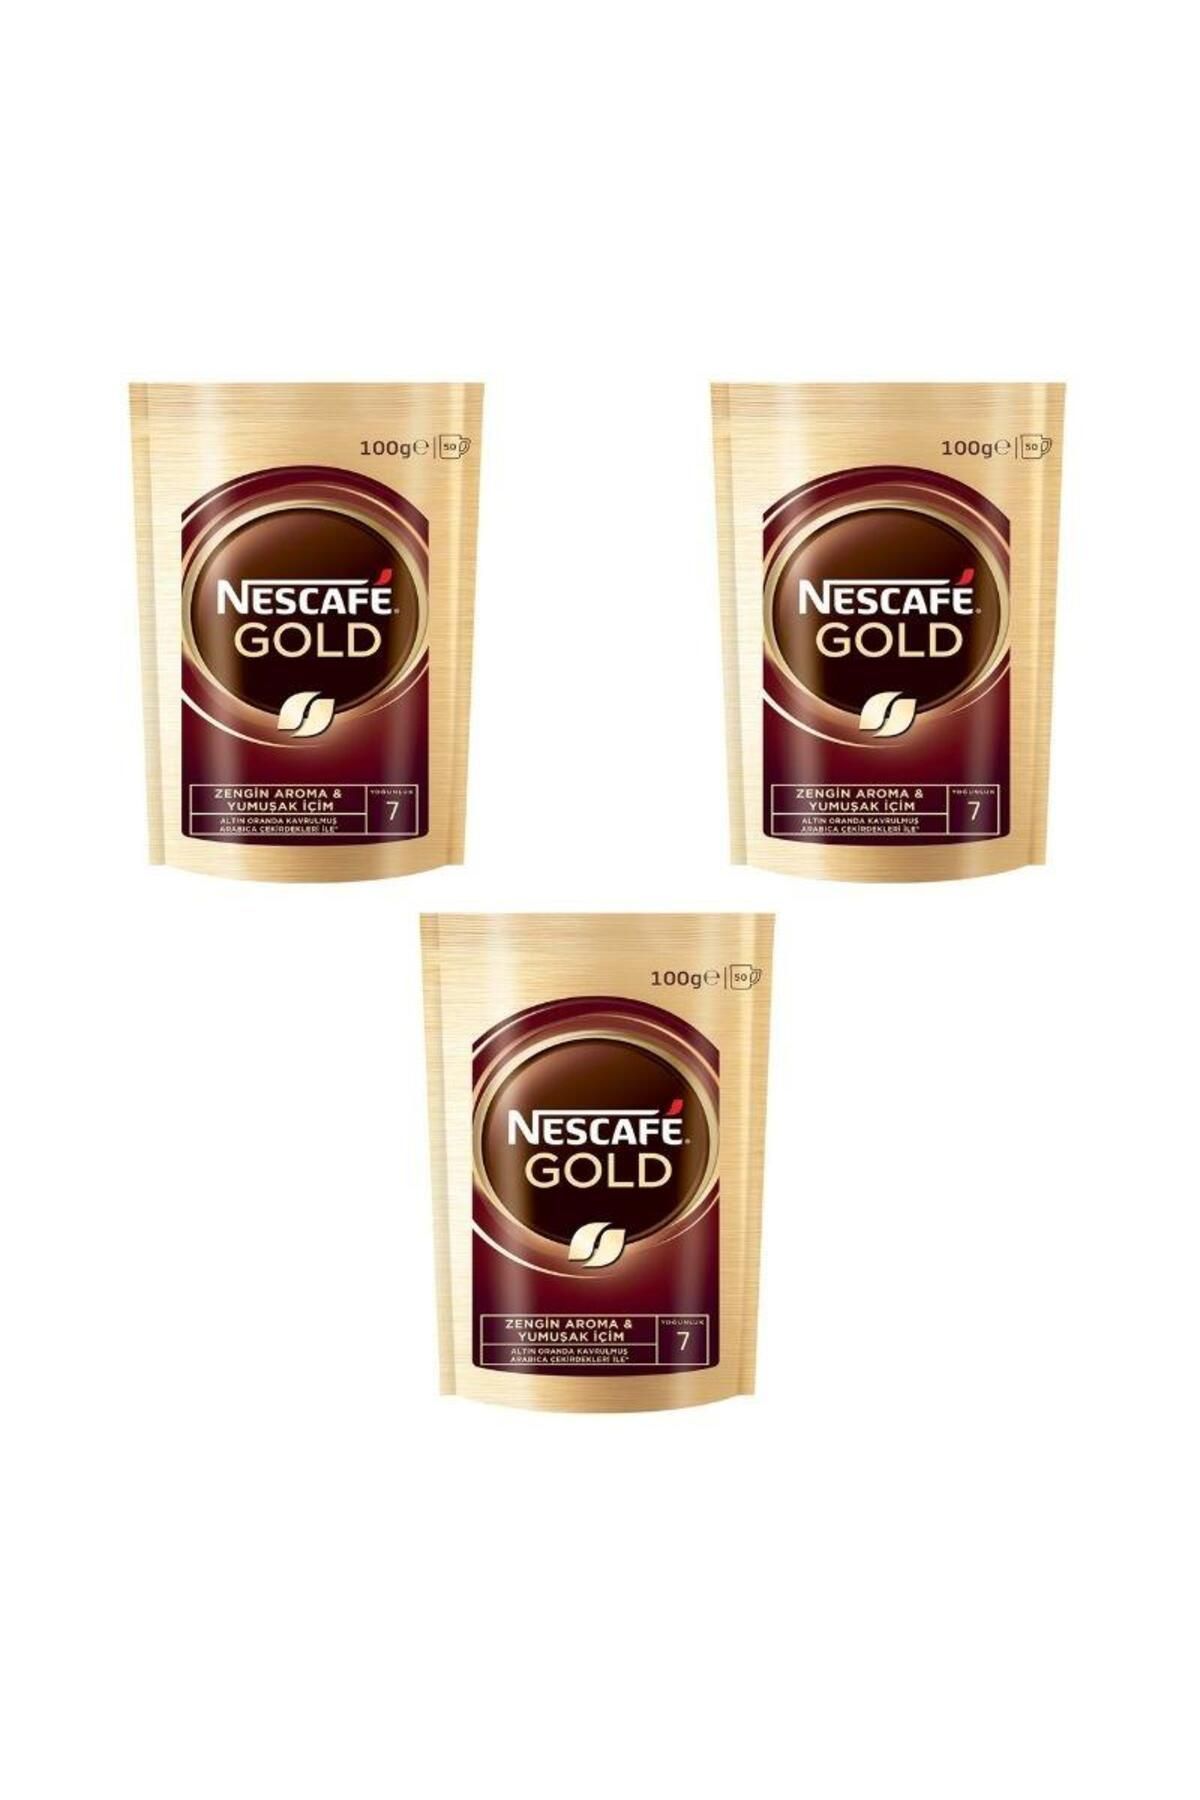 Nescafe - KAHVE NESCAFE GOLD 100GR - 3 PAKET